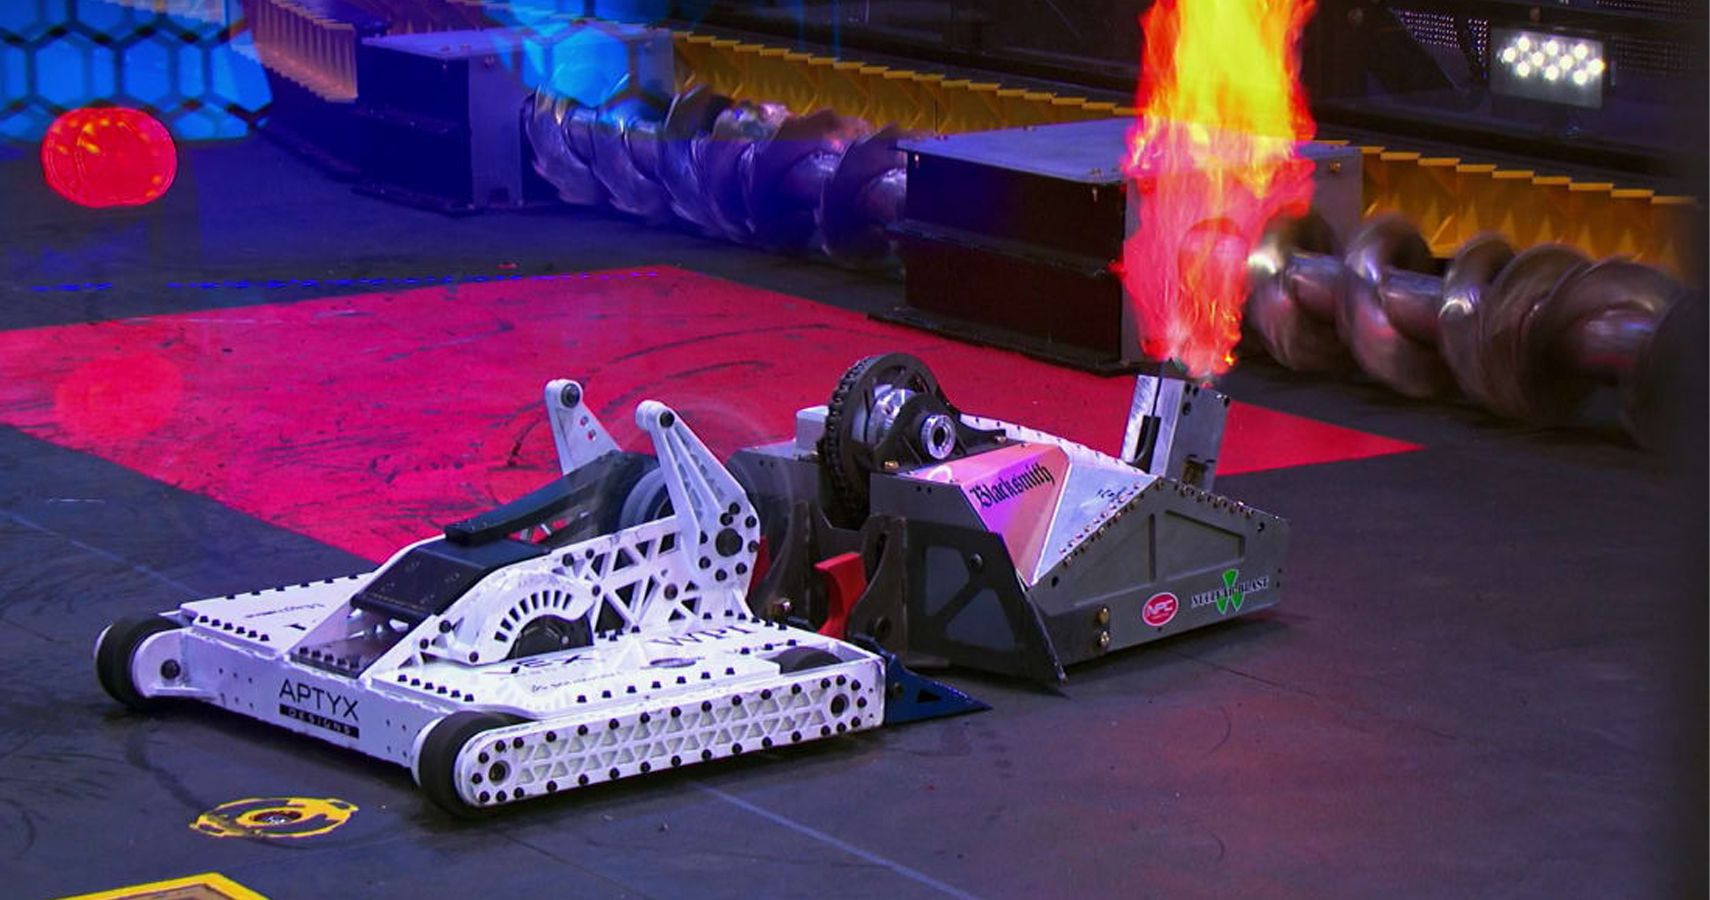 Суперфинал битвы роботов. Битвы роботов Дискавери. Битва роботов на арене шоу. Бронебот бои роботов. Битвы роботов Battlebots 2019.